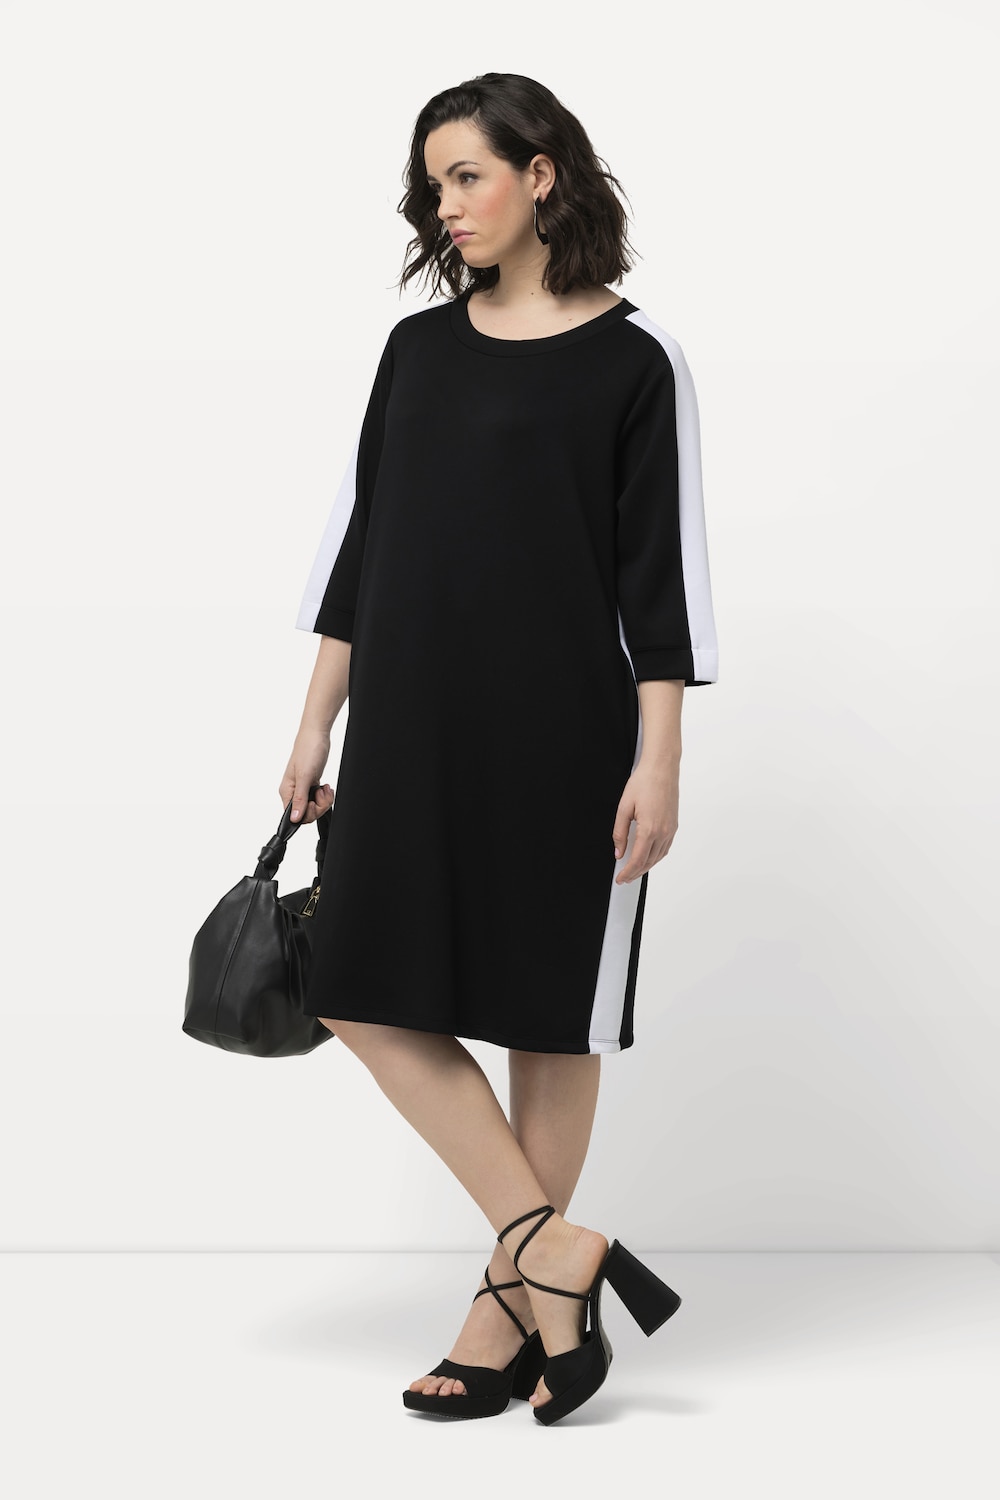 Grote Maten Jersey jurk, Dames, zwart, Maat: 42/44, Synthetische vezels/Polyester, Ulla Popken